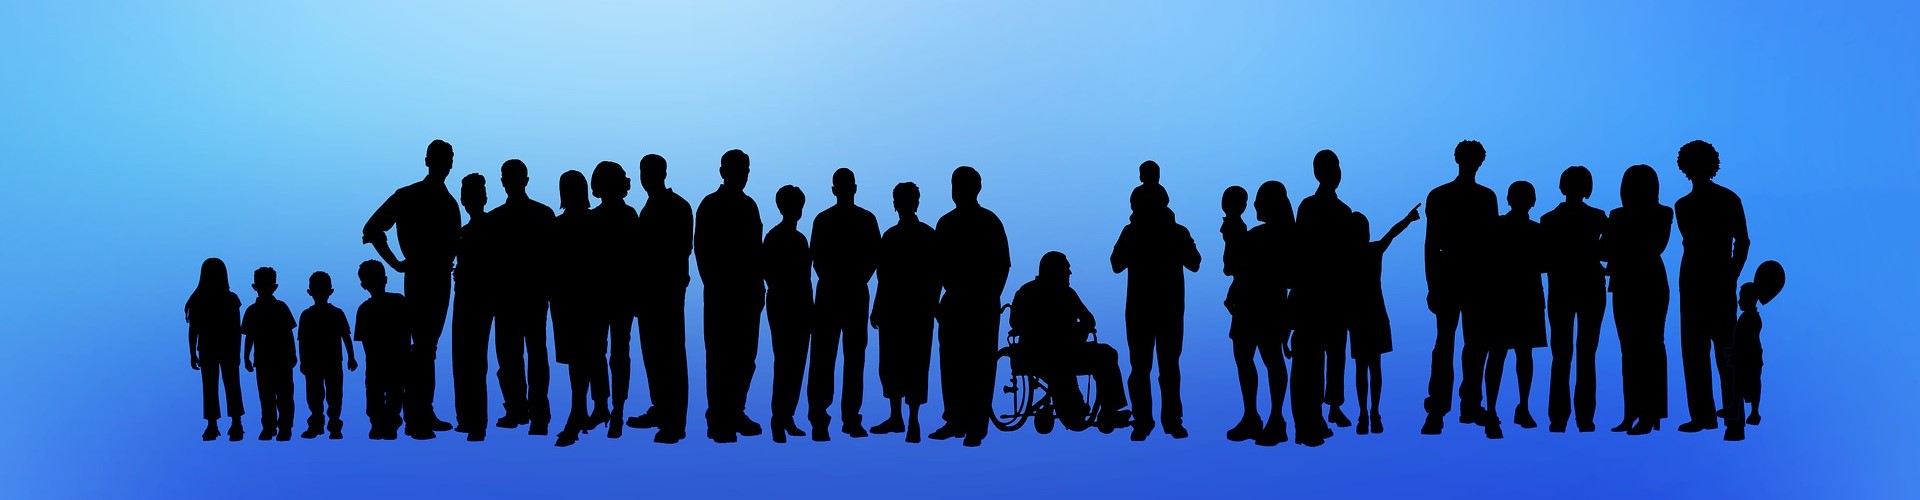 Eine Gruppe Menschen, Kinder, Erwachsene und Rollstuhlfahrer sind in schwarz auf blauem Hintergrund abgebildet.